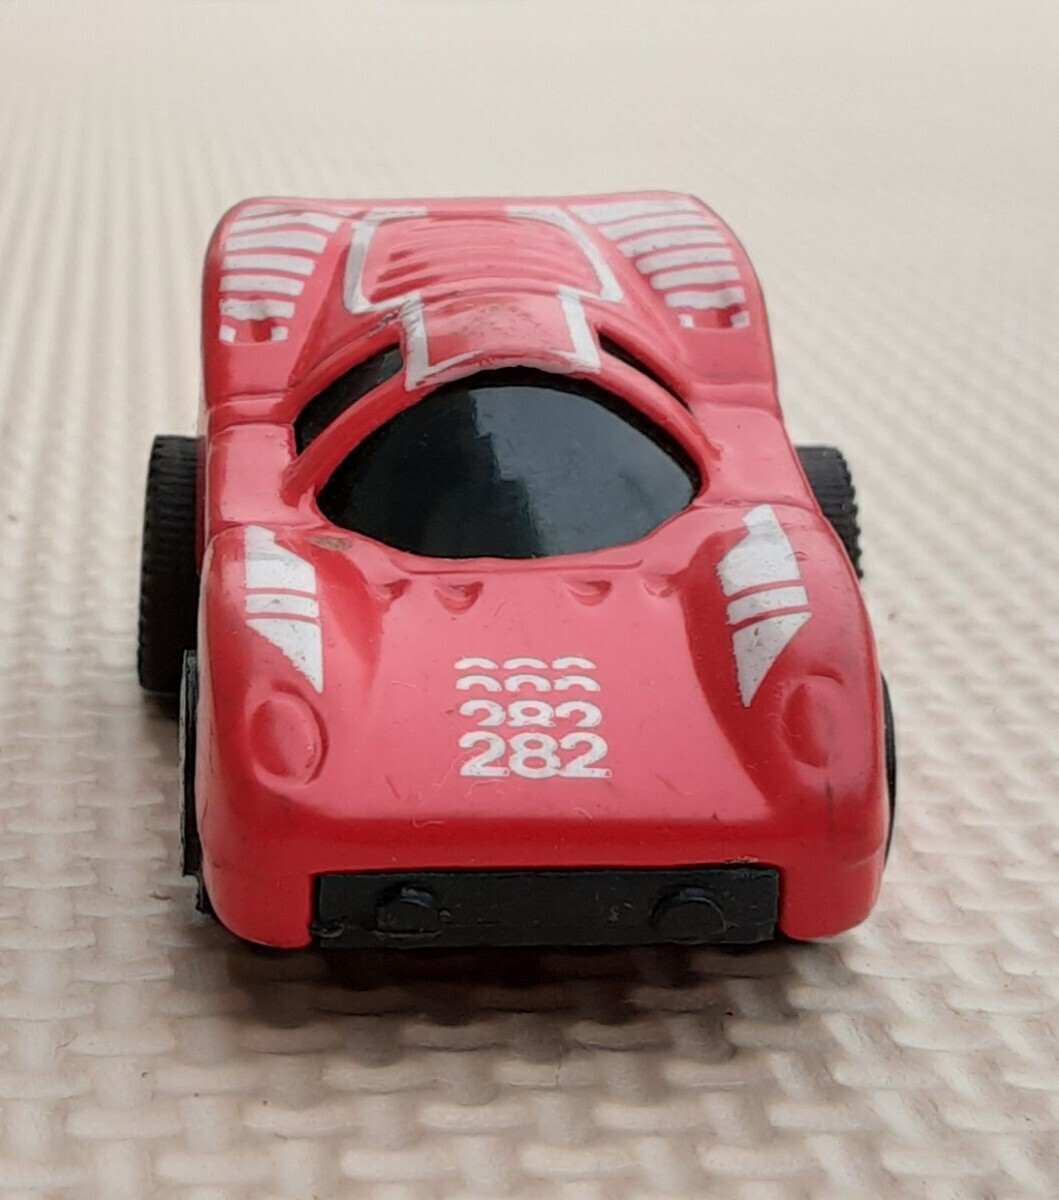 【ジャンク品】 レーシングカー 282 ミニカー 赤 レッド おもちゃ コレクション 雑貨 レトロ 飾り 置物 _画像4